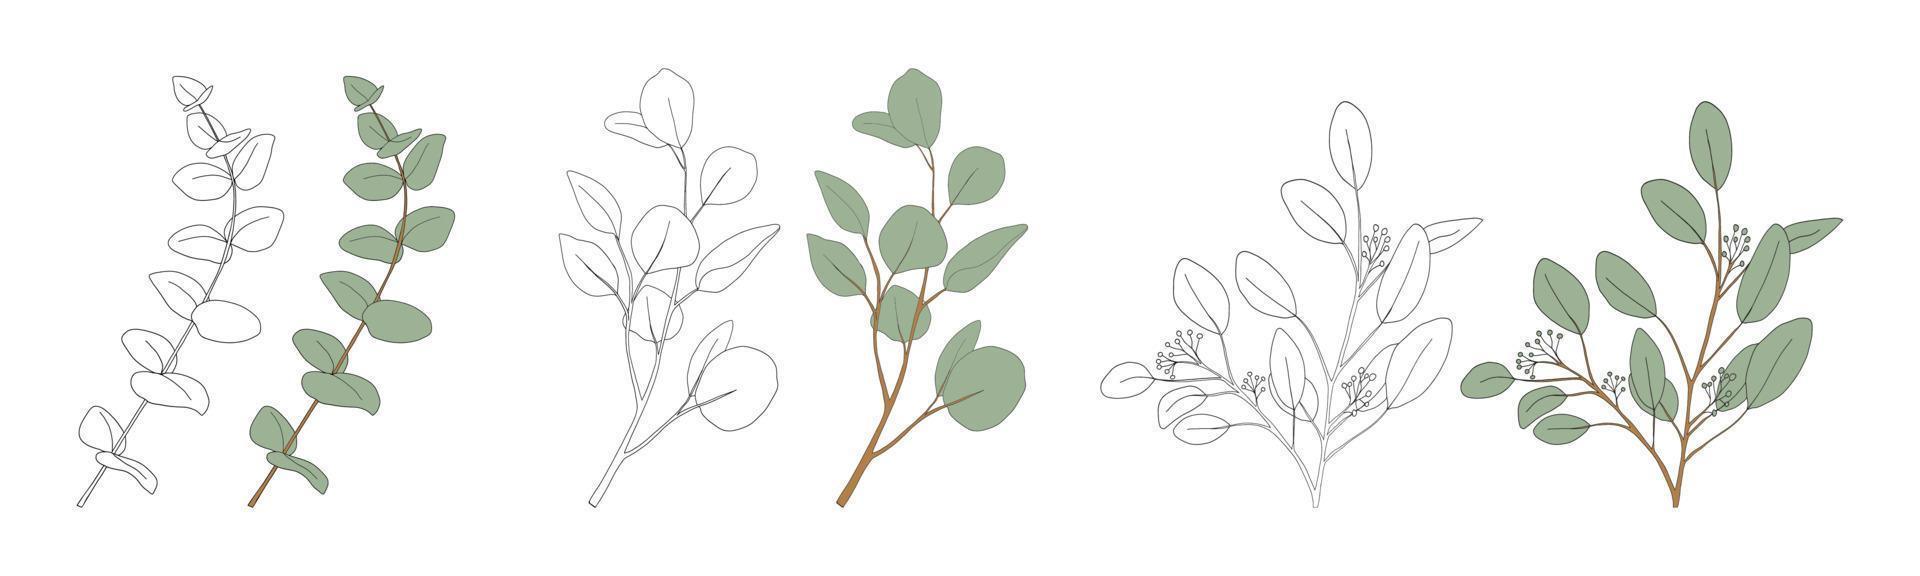 eukalyptusblad rund form på branches.set doodle vektorillustration naturliga gröna bladelement, eukalyptuspopulus isolerad på vit bakgrund enkel och söt design för gratulationskort vektor